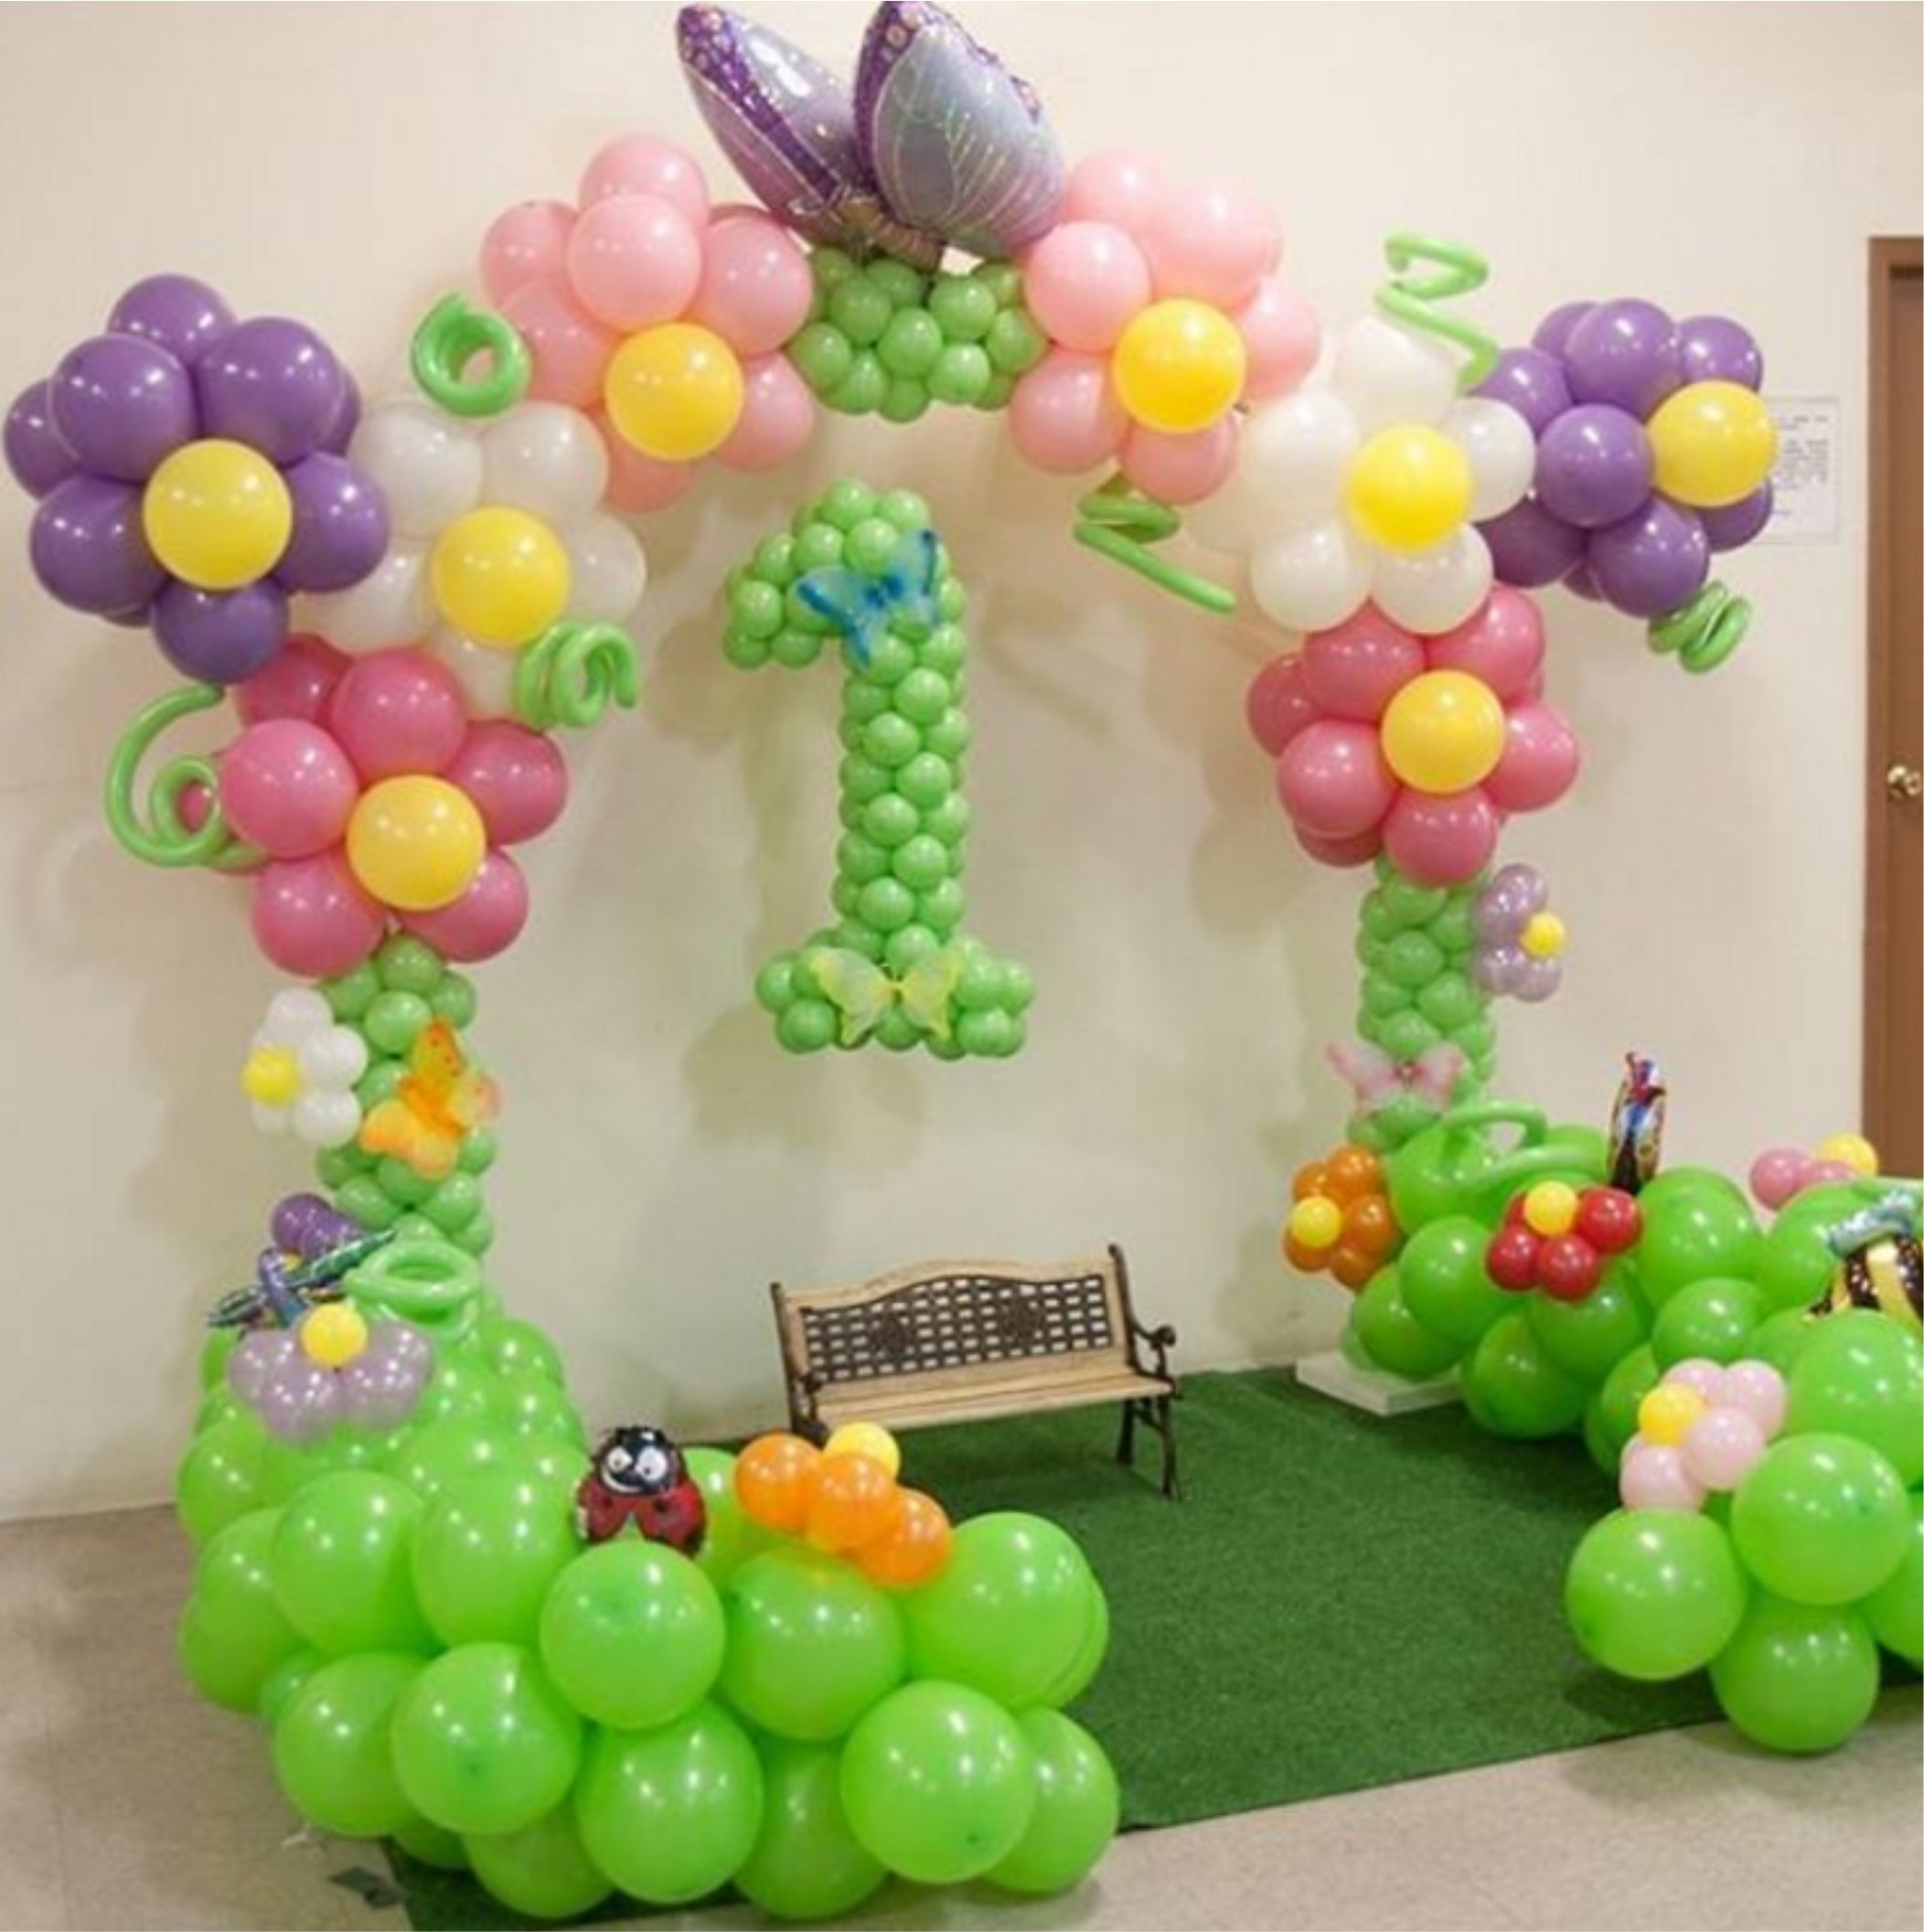 оформление зала на день рождения на 1 год